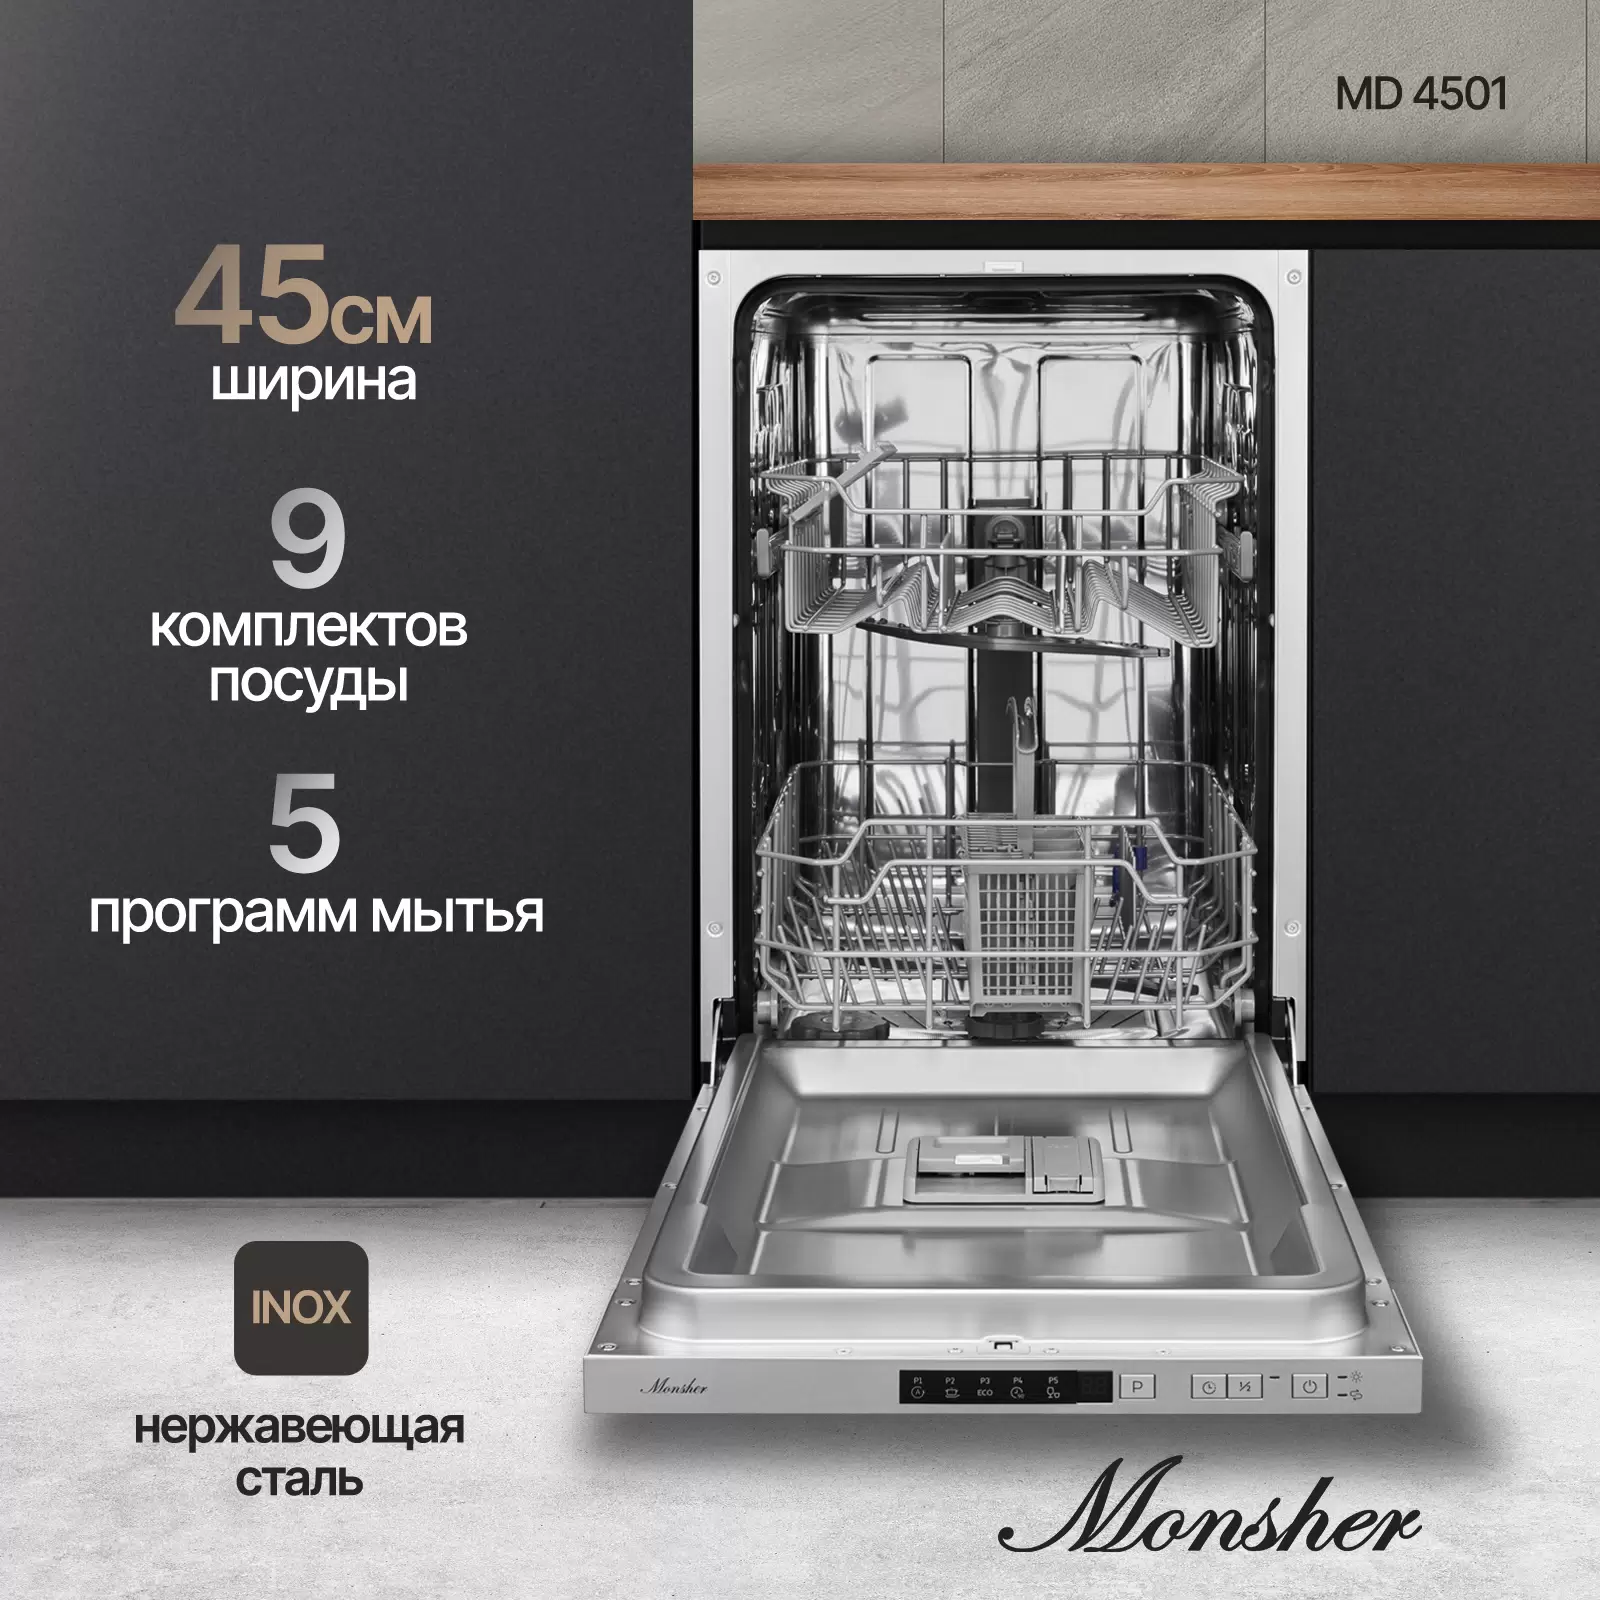 Встраиваемая посудомоечная машина Monsher MD 4501 - VLARNIKA в Донецке